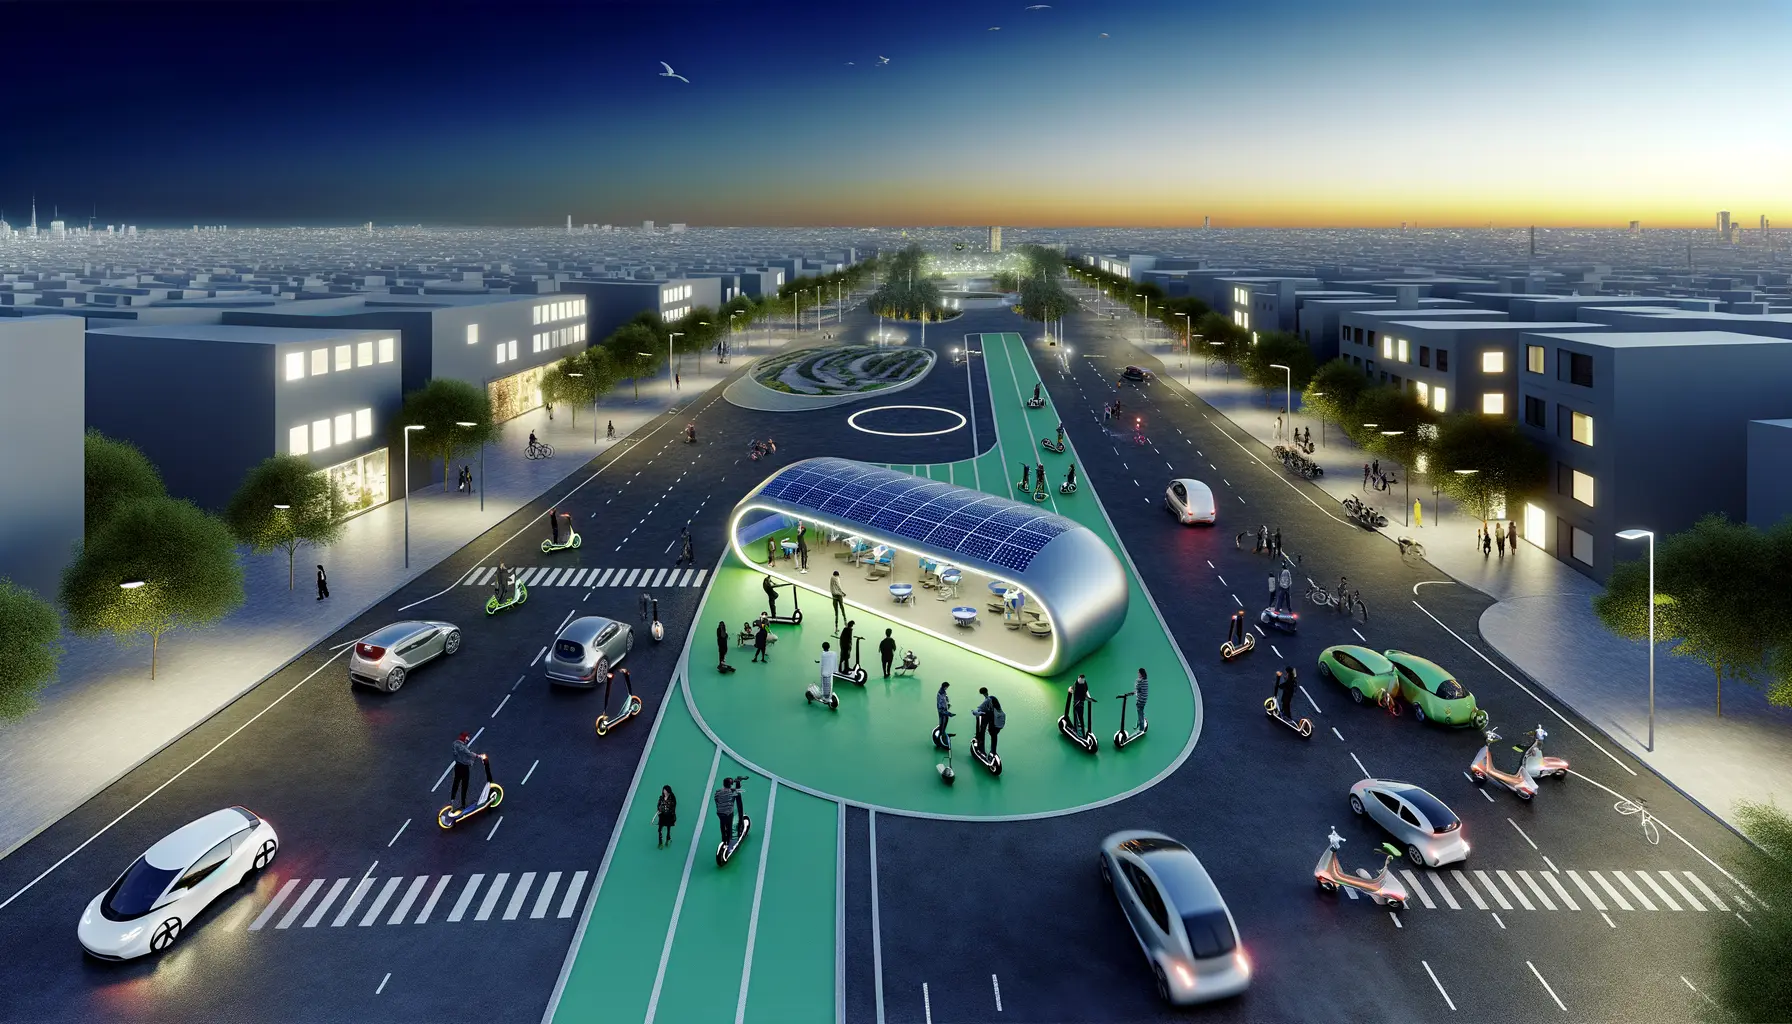 Städtebild mit nachhaltigen Mobilitätslösungen